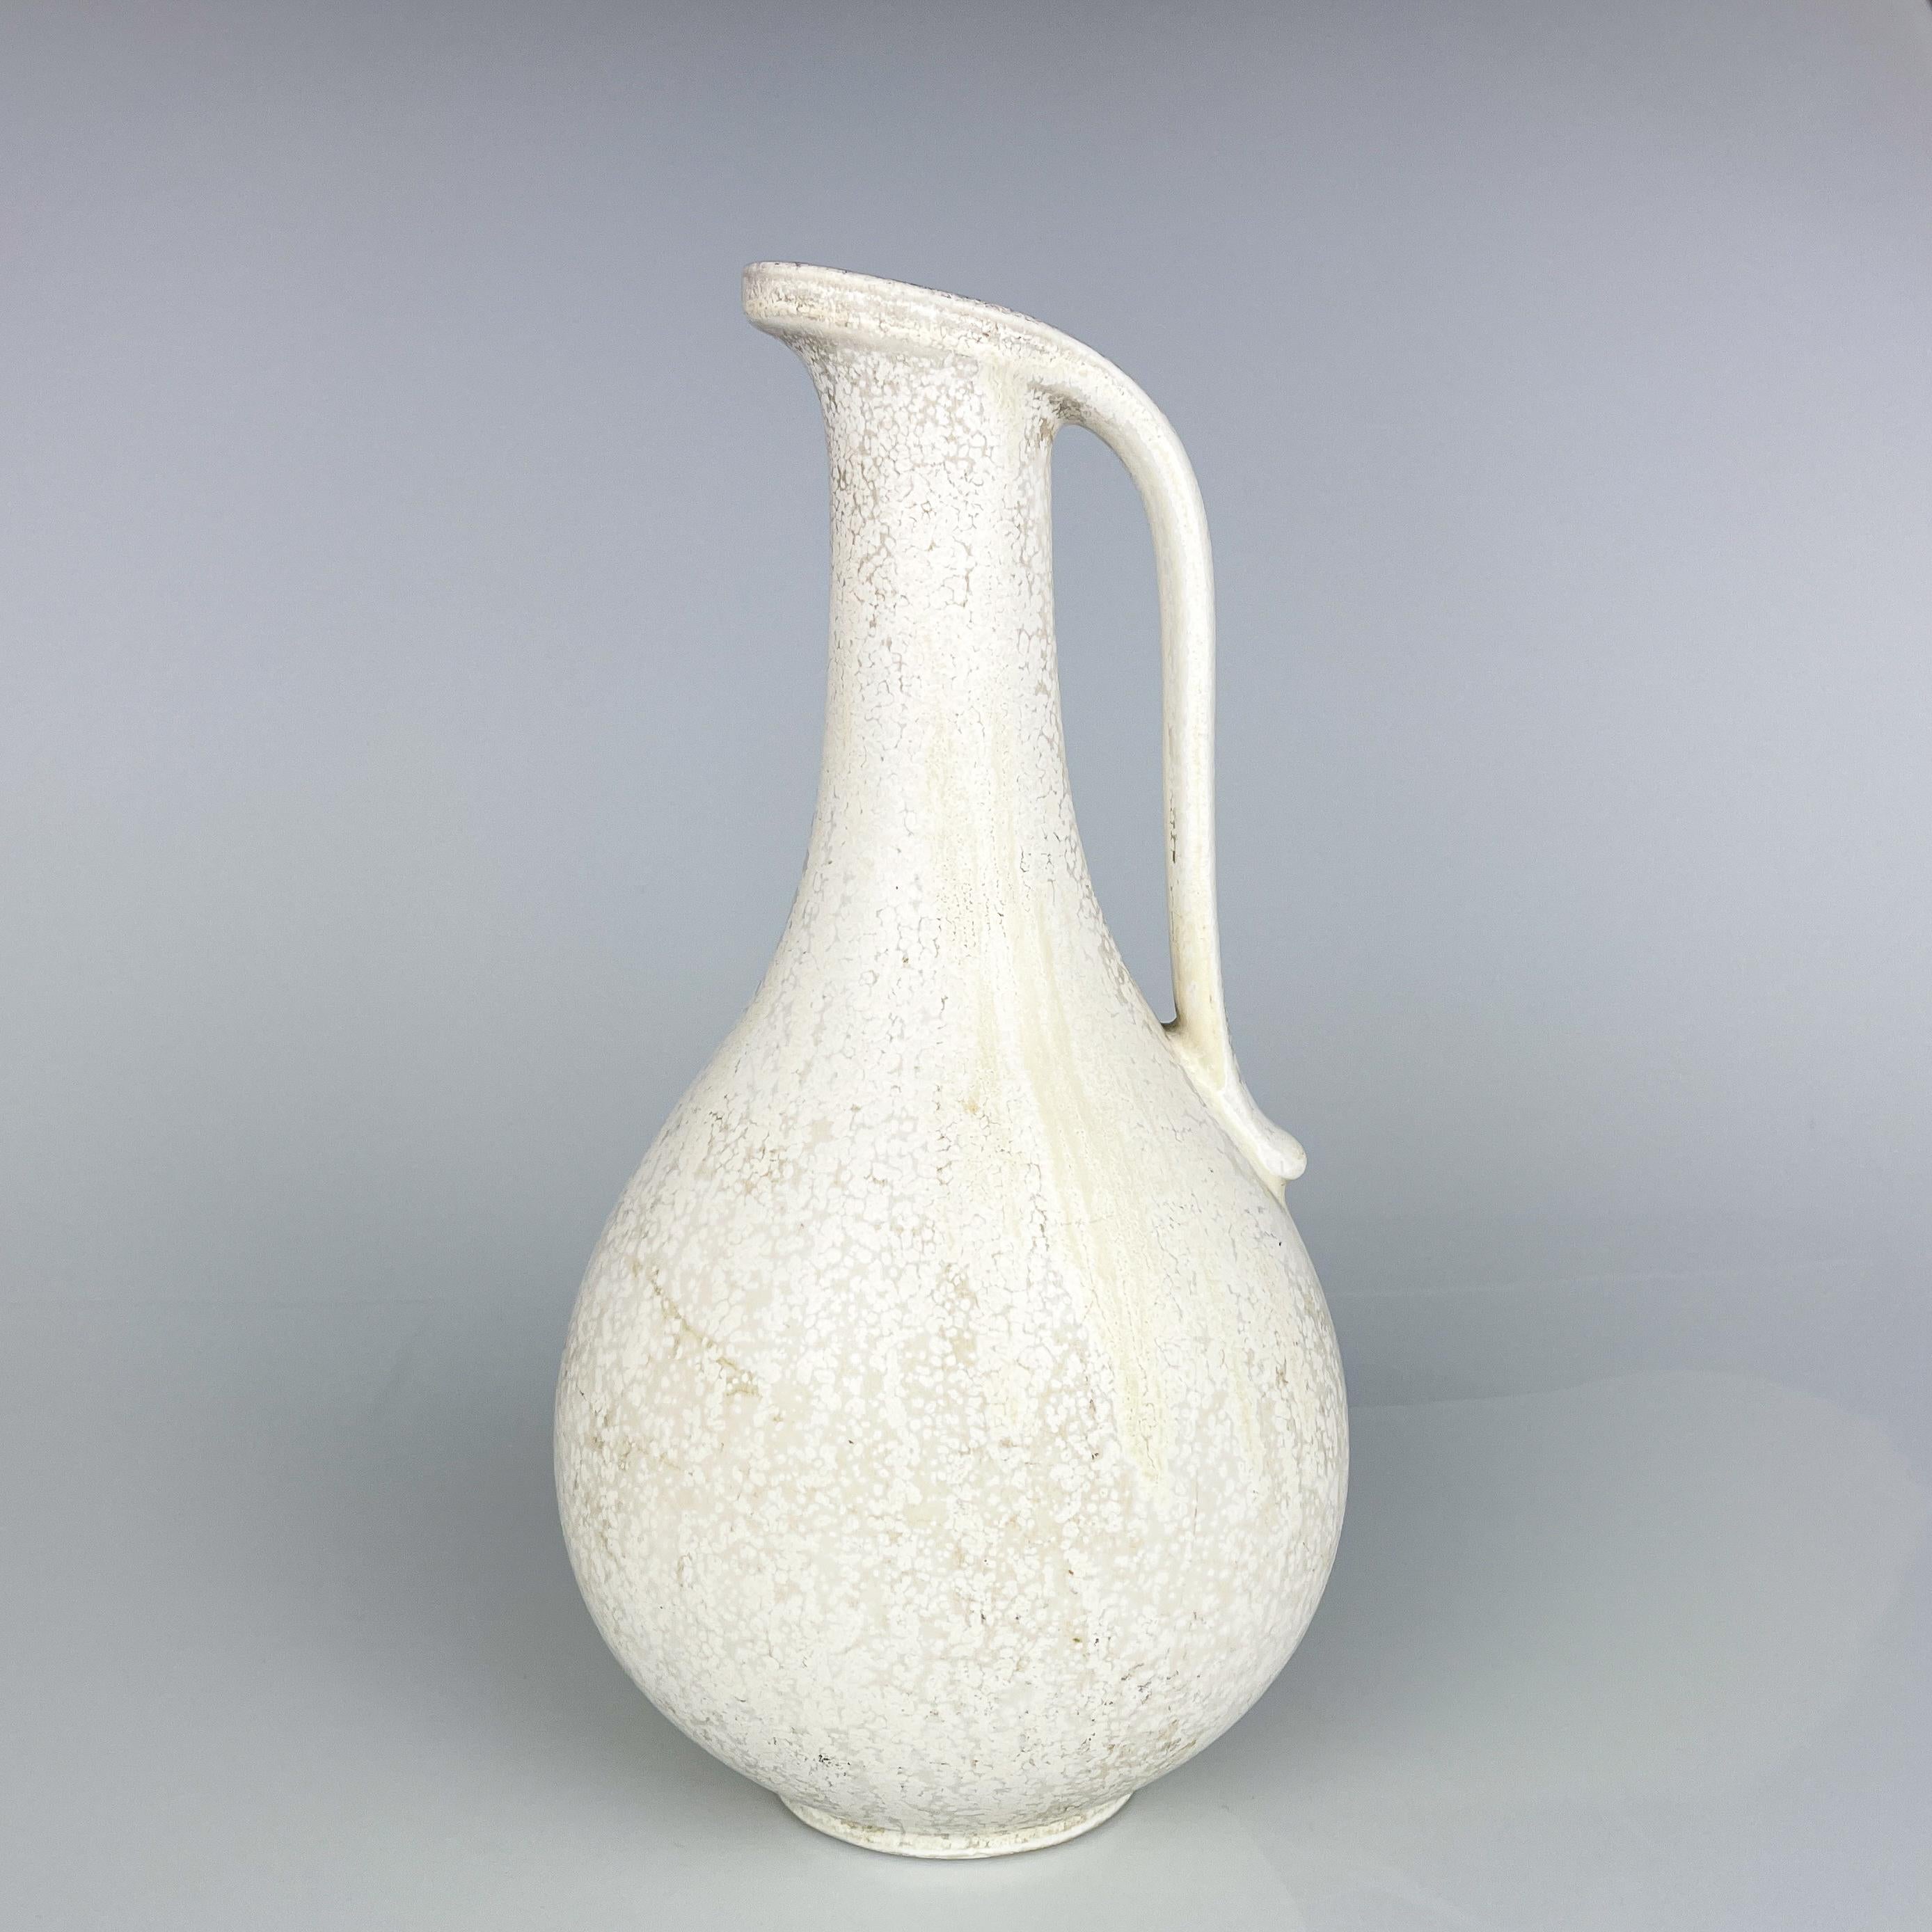 Gunnar Nylund, Steinzeugvase/-krug Rörstrand, Schweden, um 1950

Beschreibung
Vase/Krug aus Steinzeug mit schöner weißer 